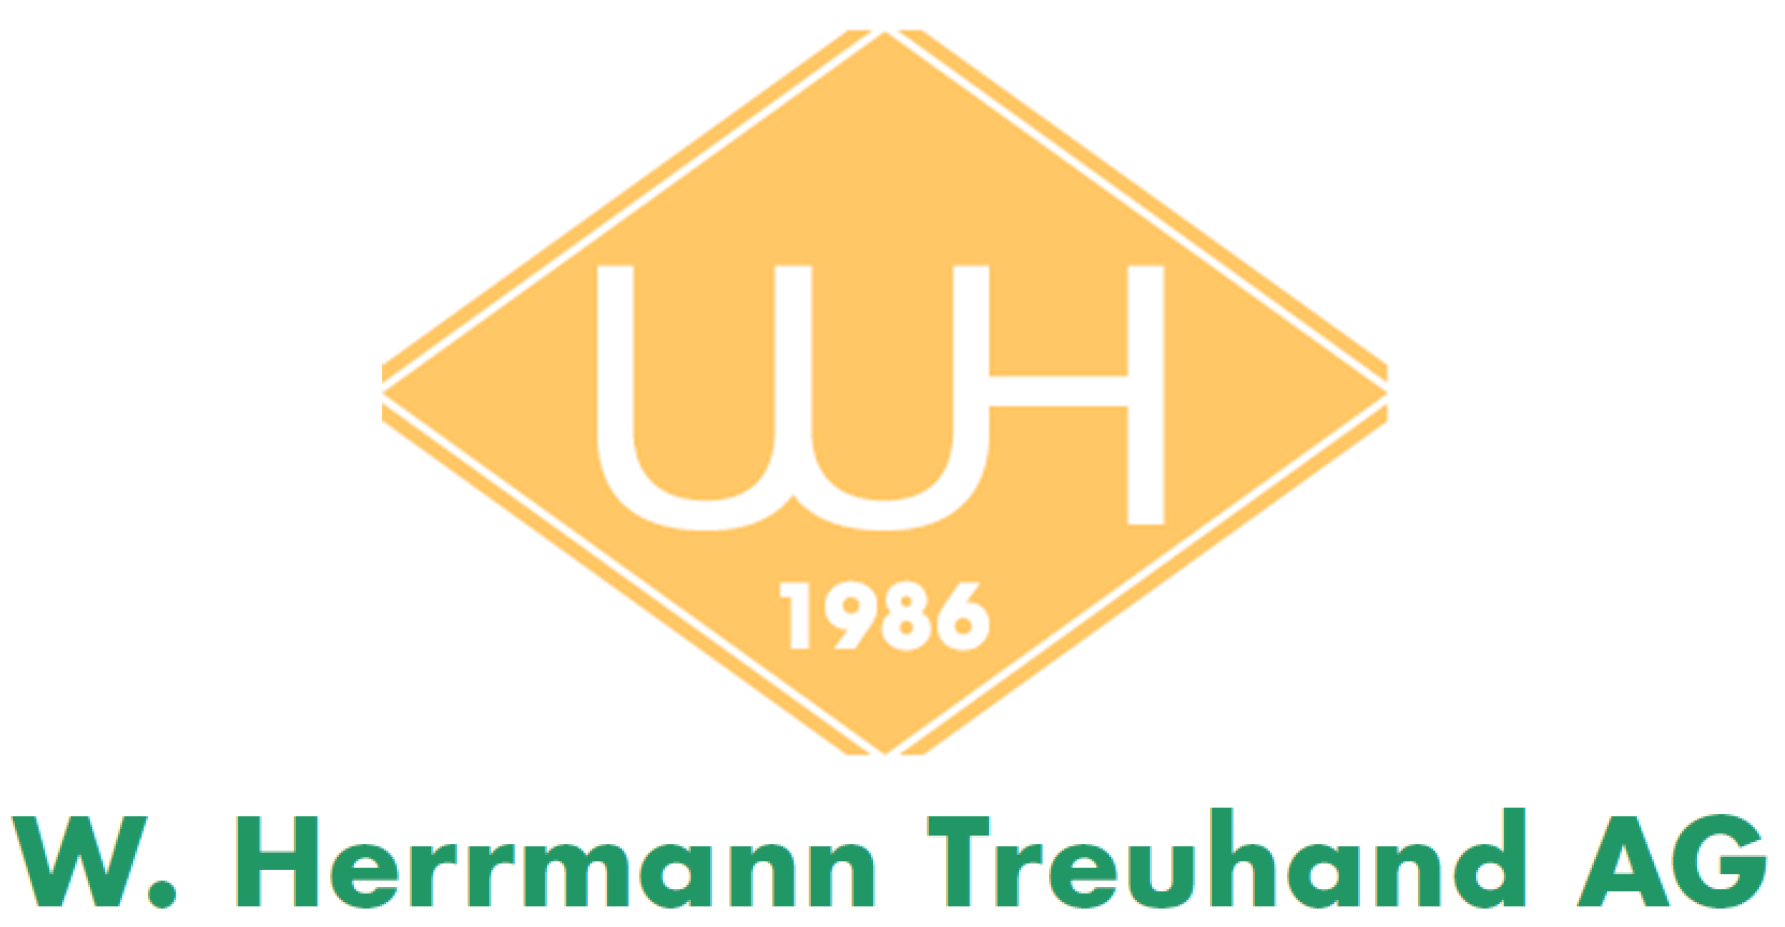 Logo von der W. Herrmann Treuhand AG in den Farben gelb und grün